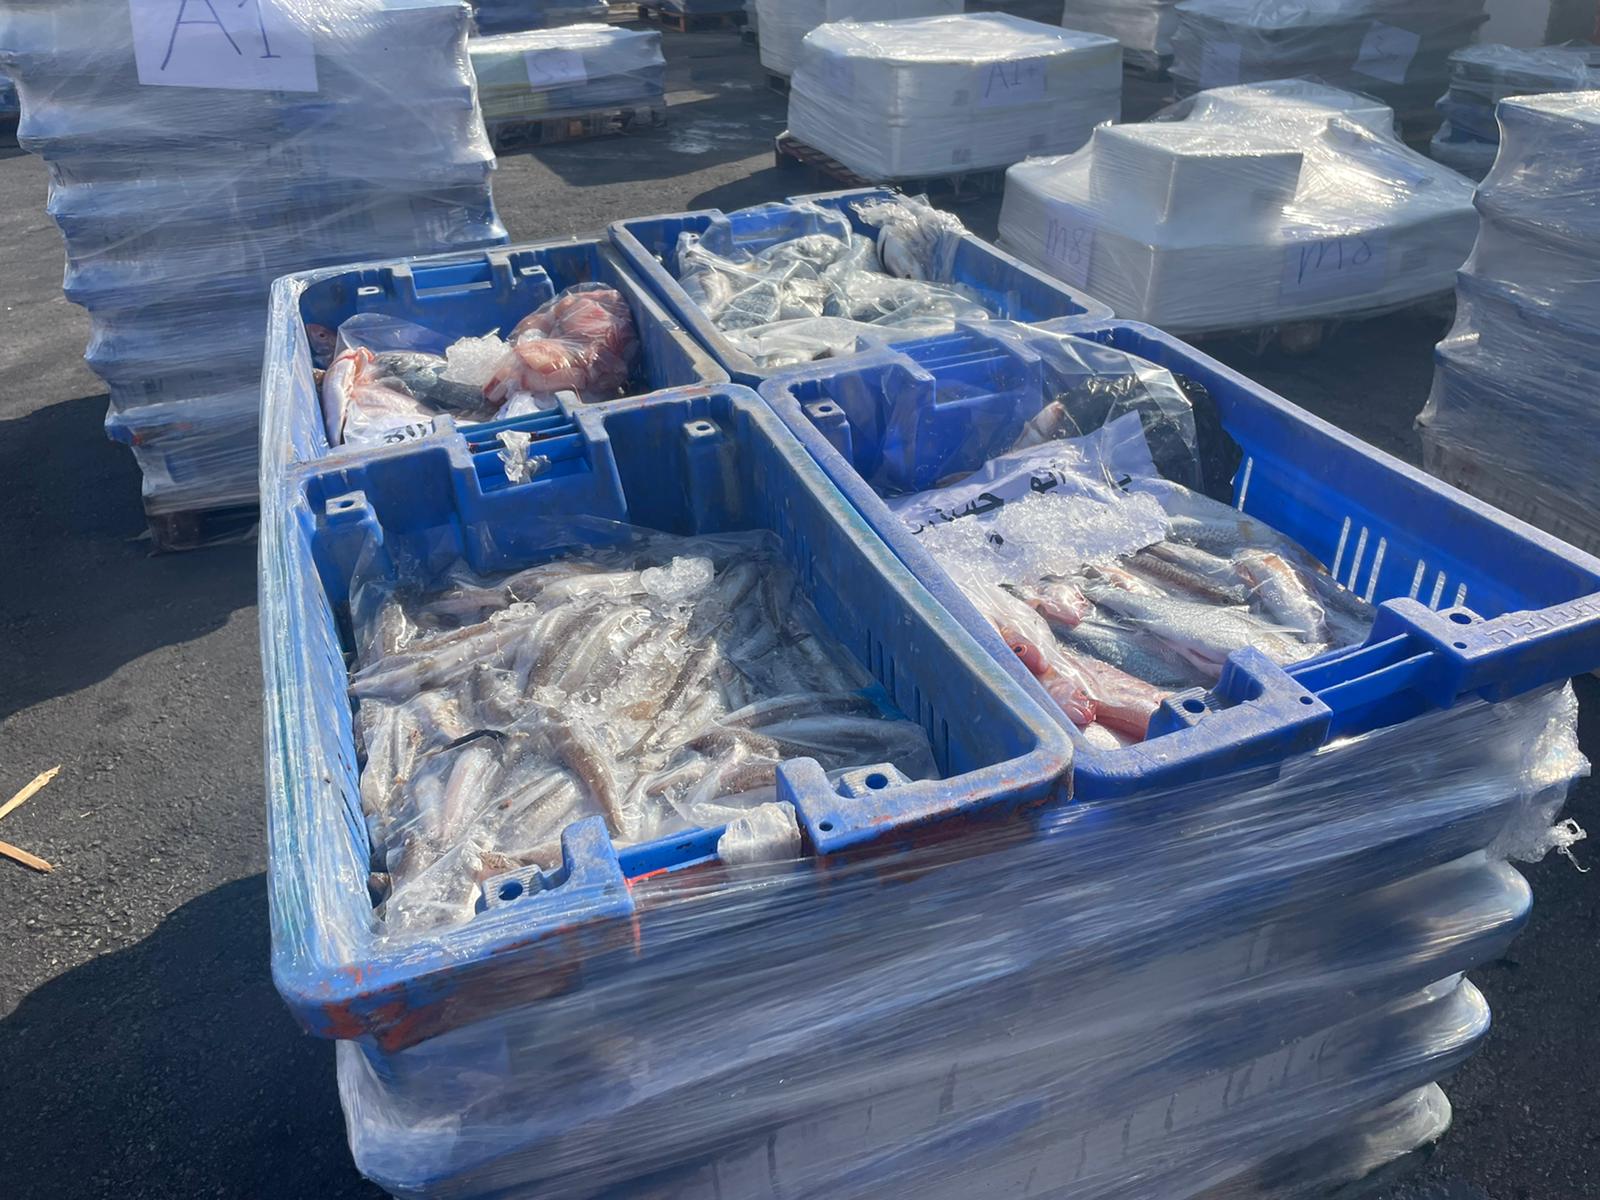 משלוח דגים מוברח מעזה לישראל שנתפס על ידי פקחים (צילום: משרד החקלאות)